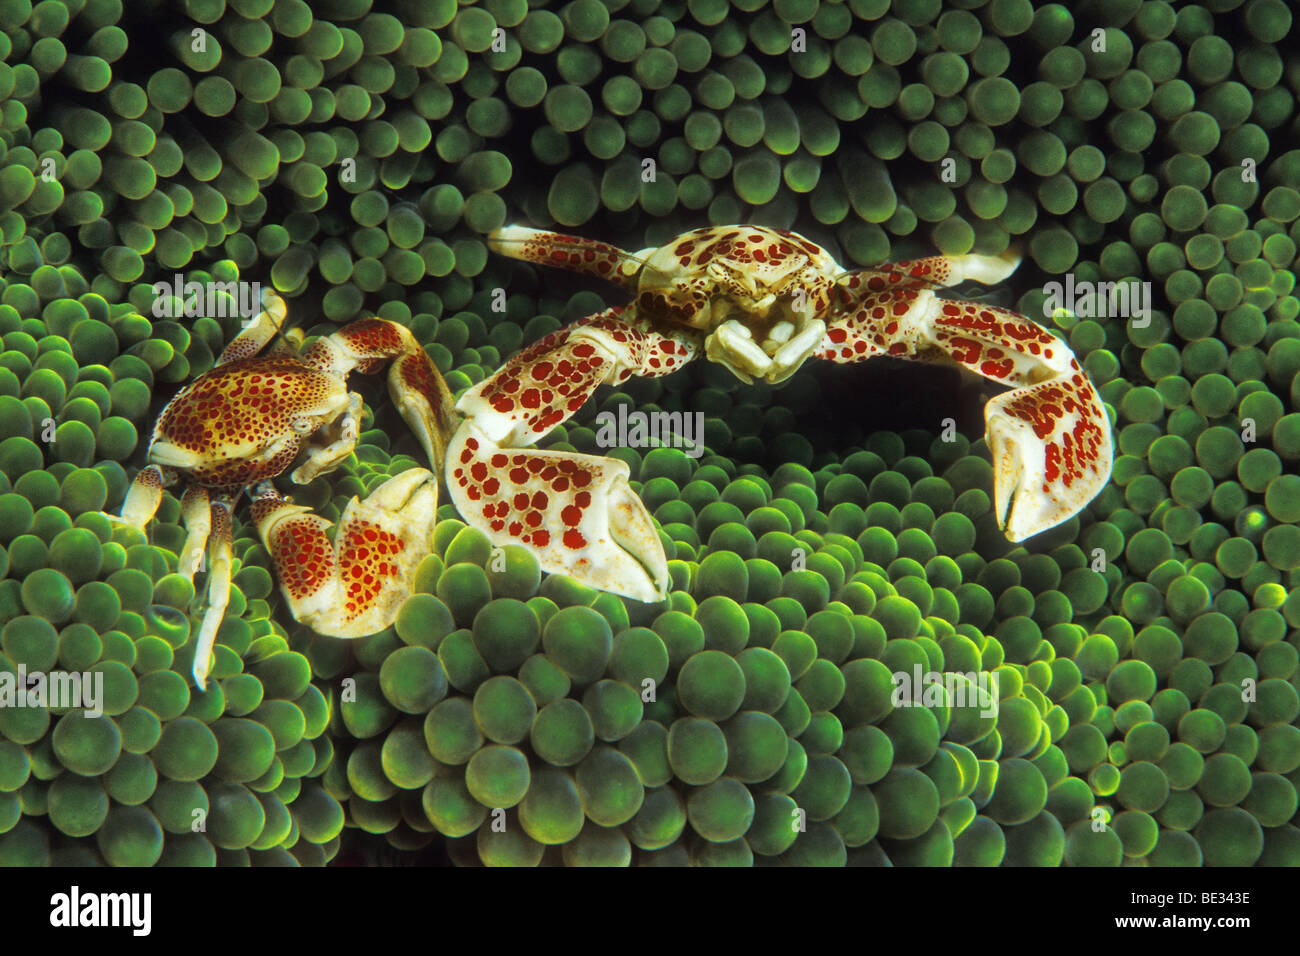 Pair of Anemone Porcelain Crab, Neopetrolisthes oshimai, Bunaken, Sulawesi, Indonesia Stock Photo